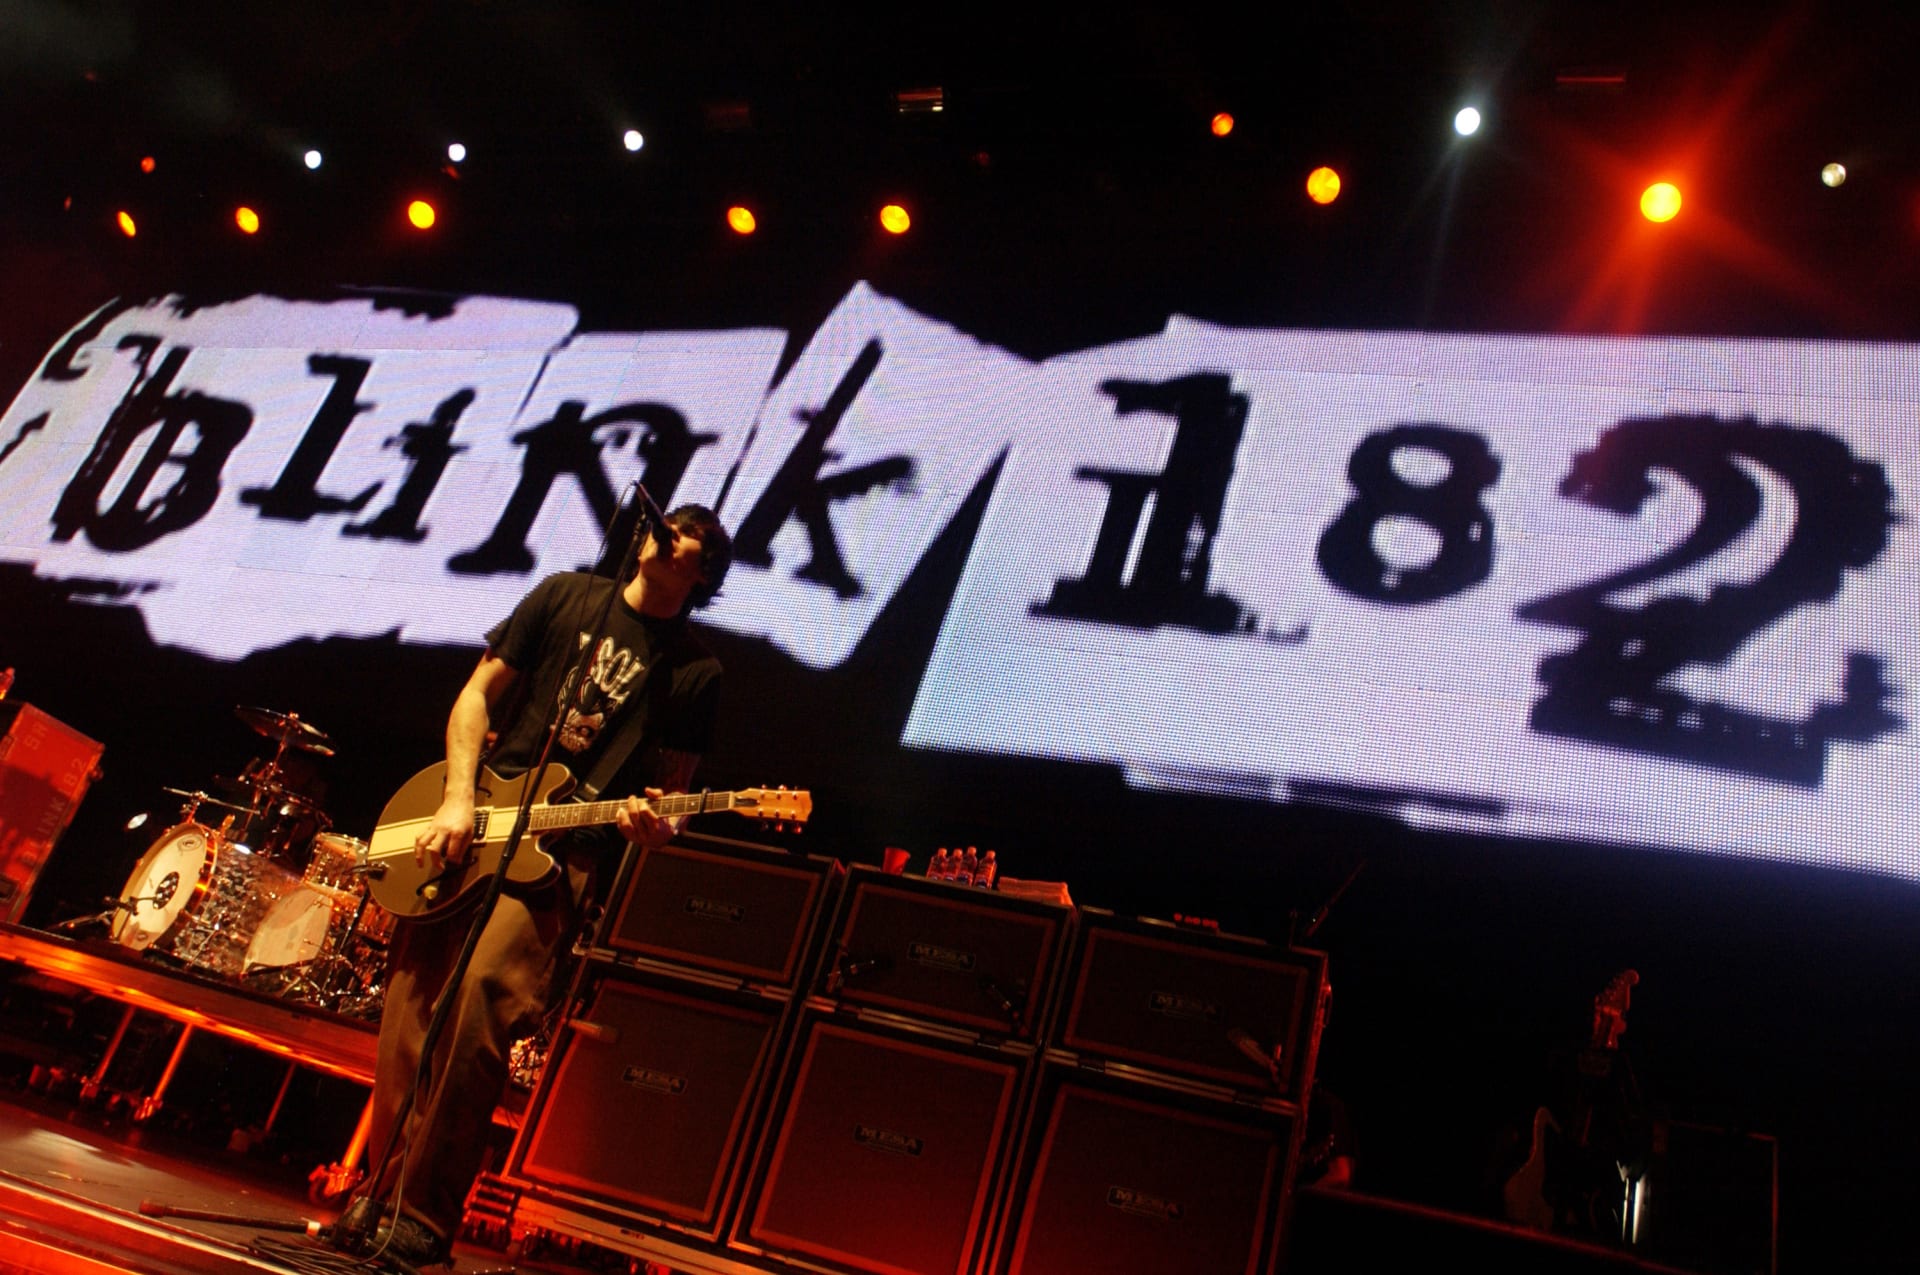 Tisíce fanoušků dnes vyrazí do O2 areny, aby si po letech poslechli legendární skupinu Blink 182.